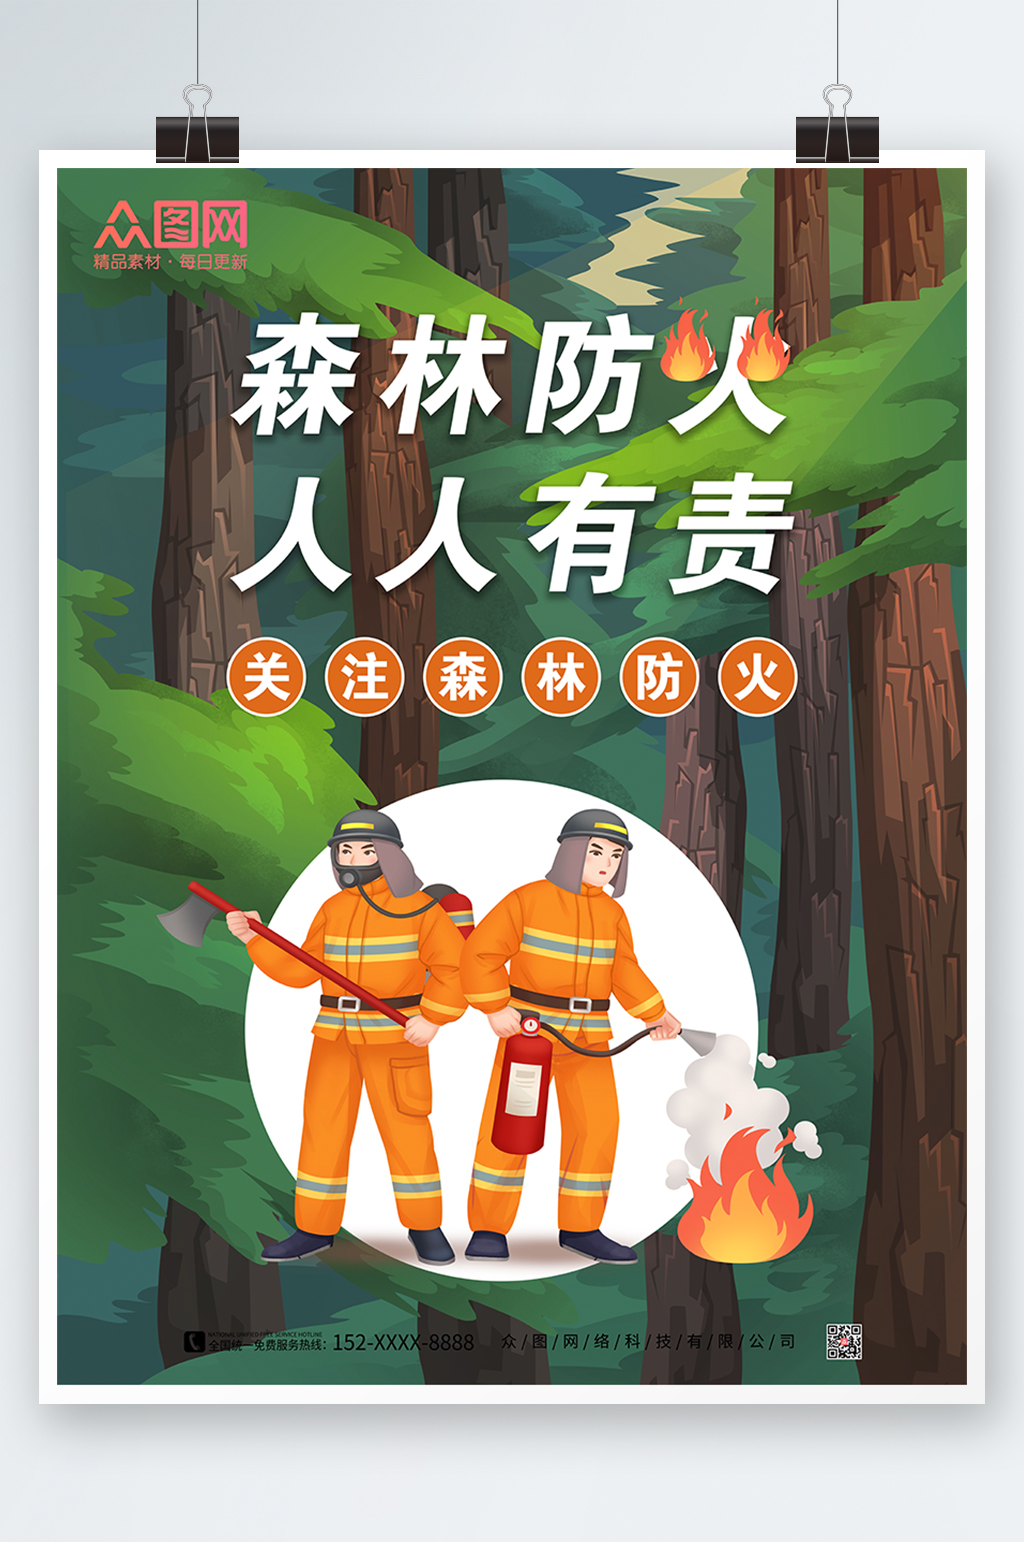 森林防火标志宣传画图片